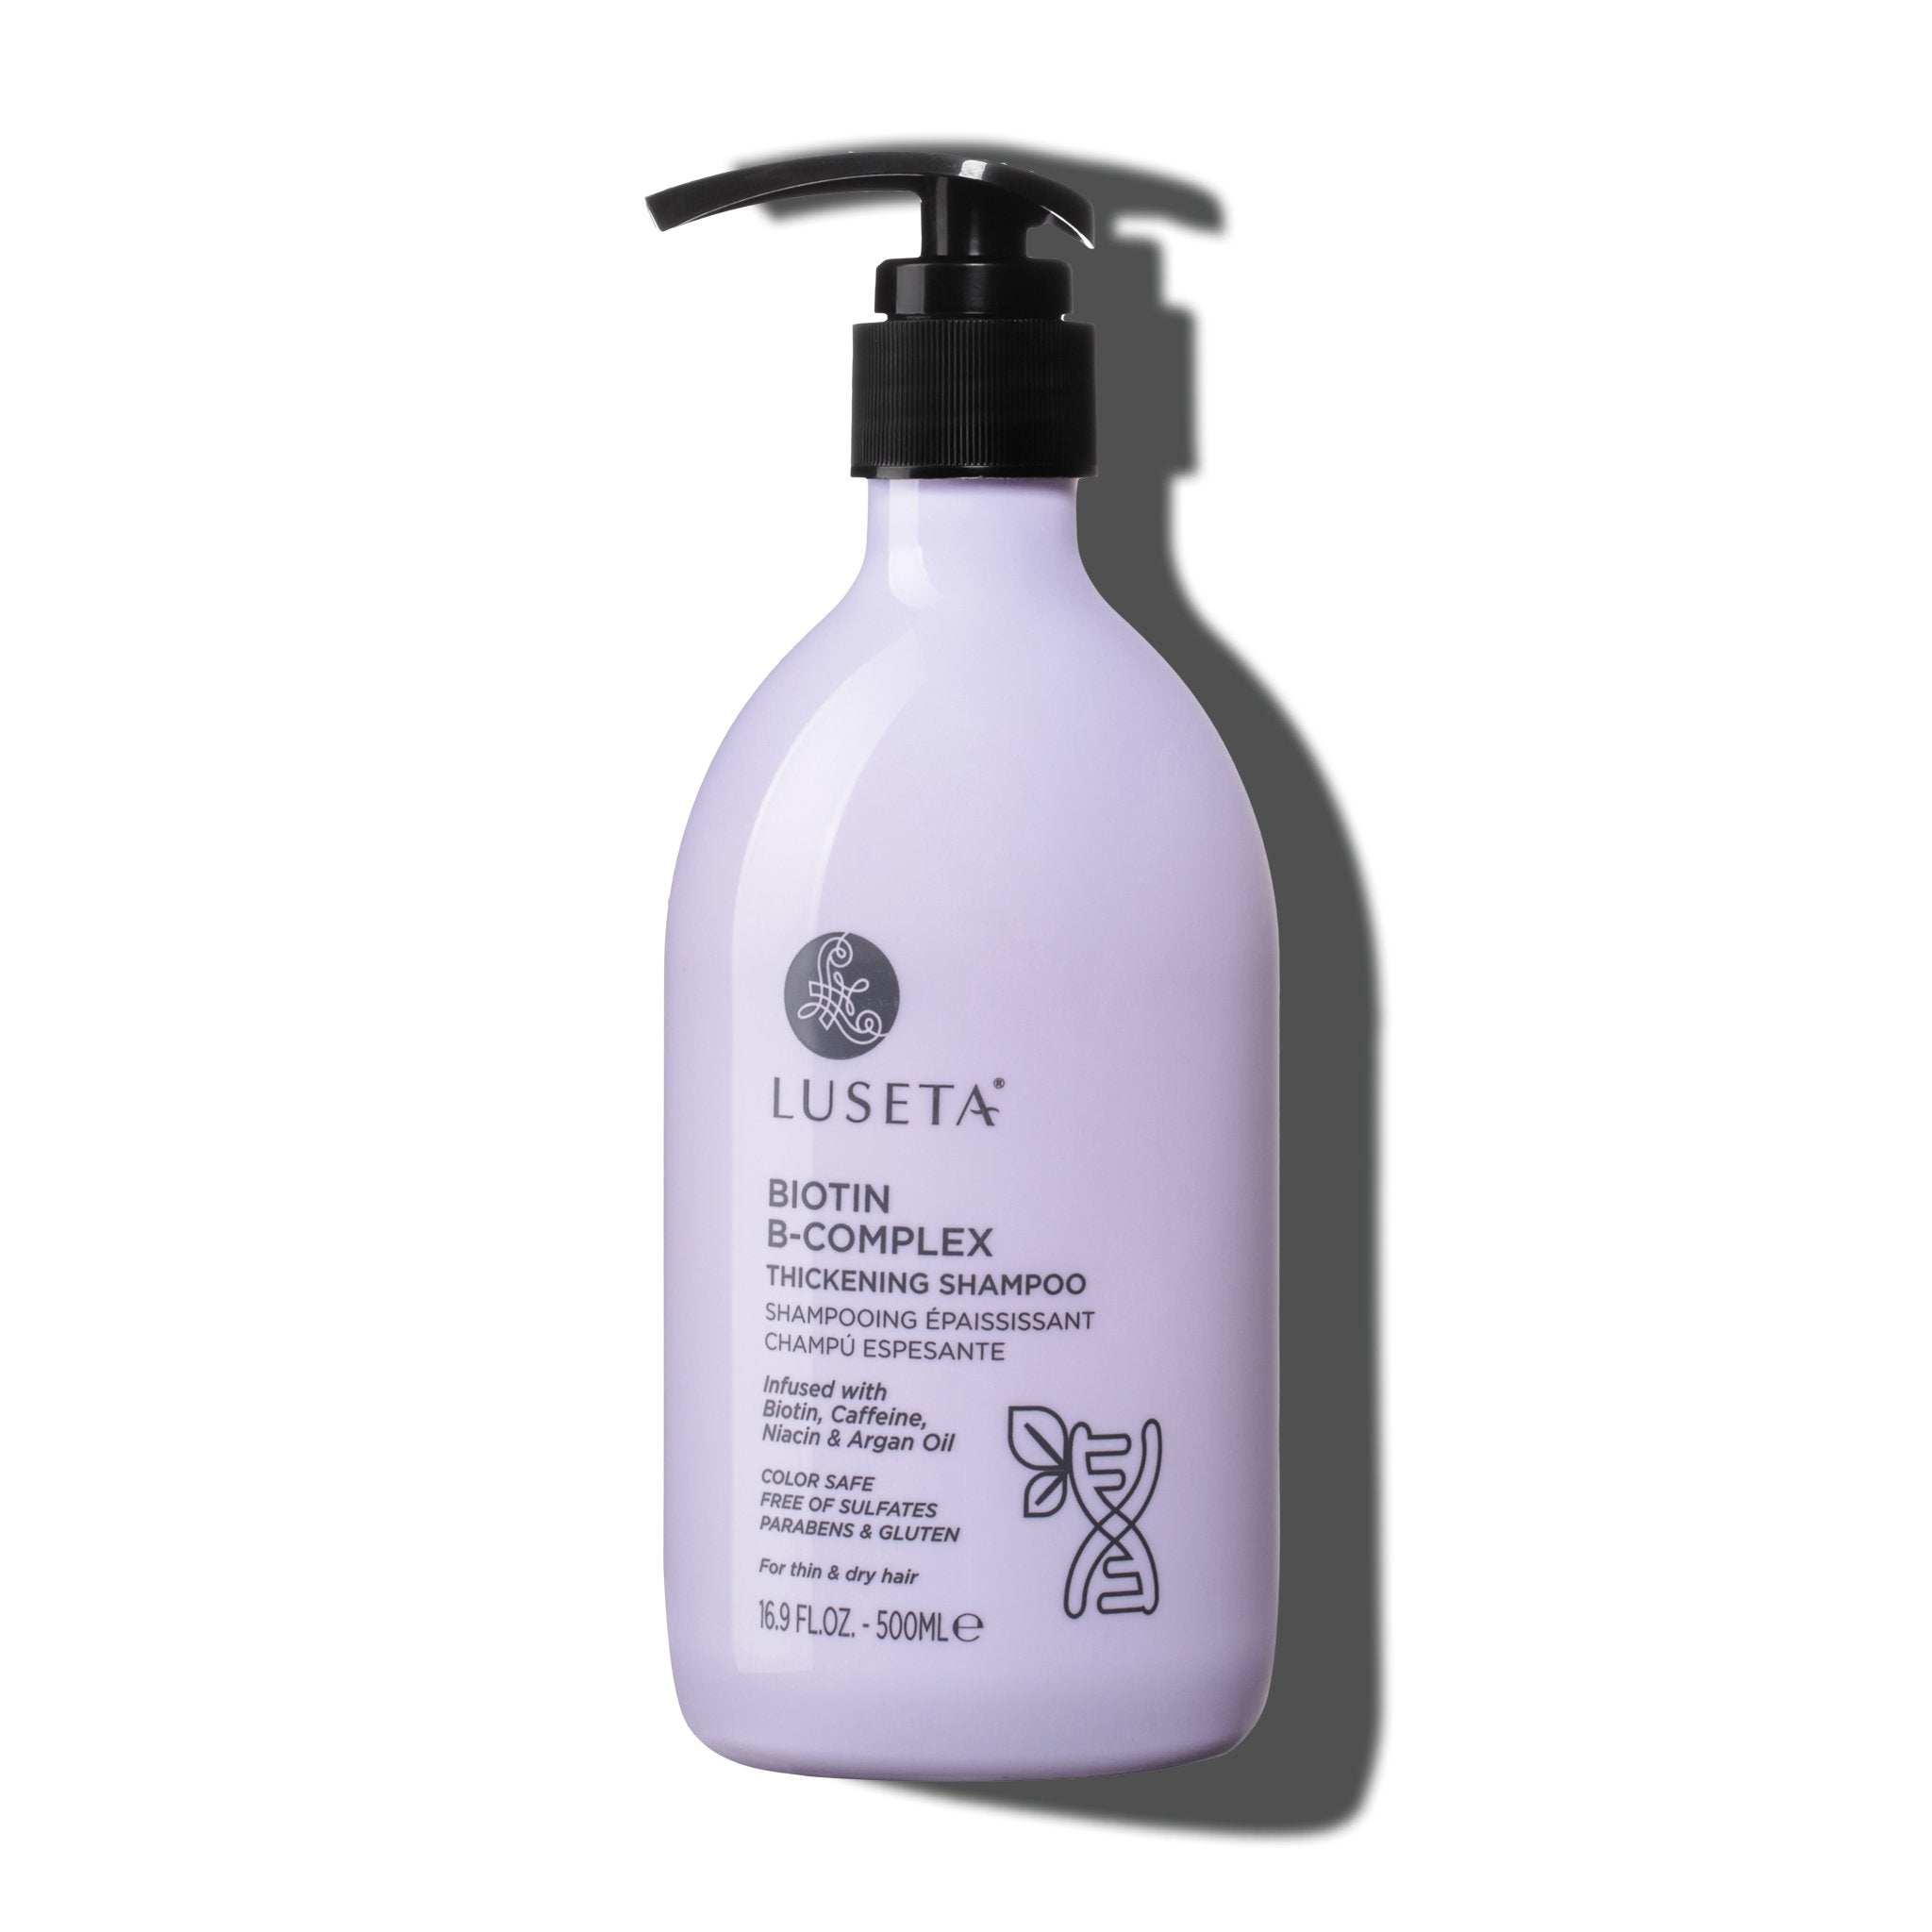 Biotin B-Complex Thickening Shampoo | Luseta